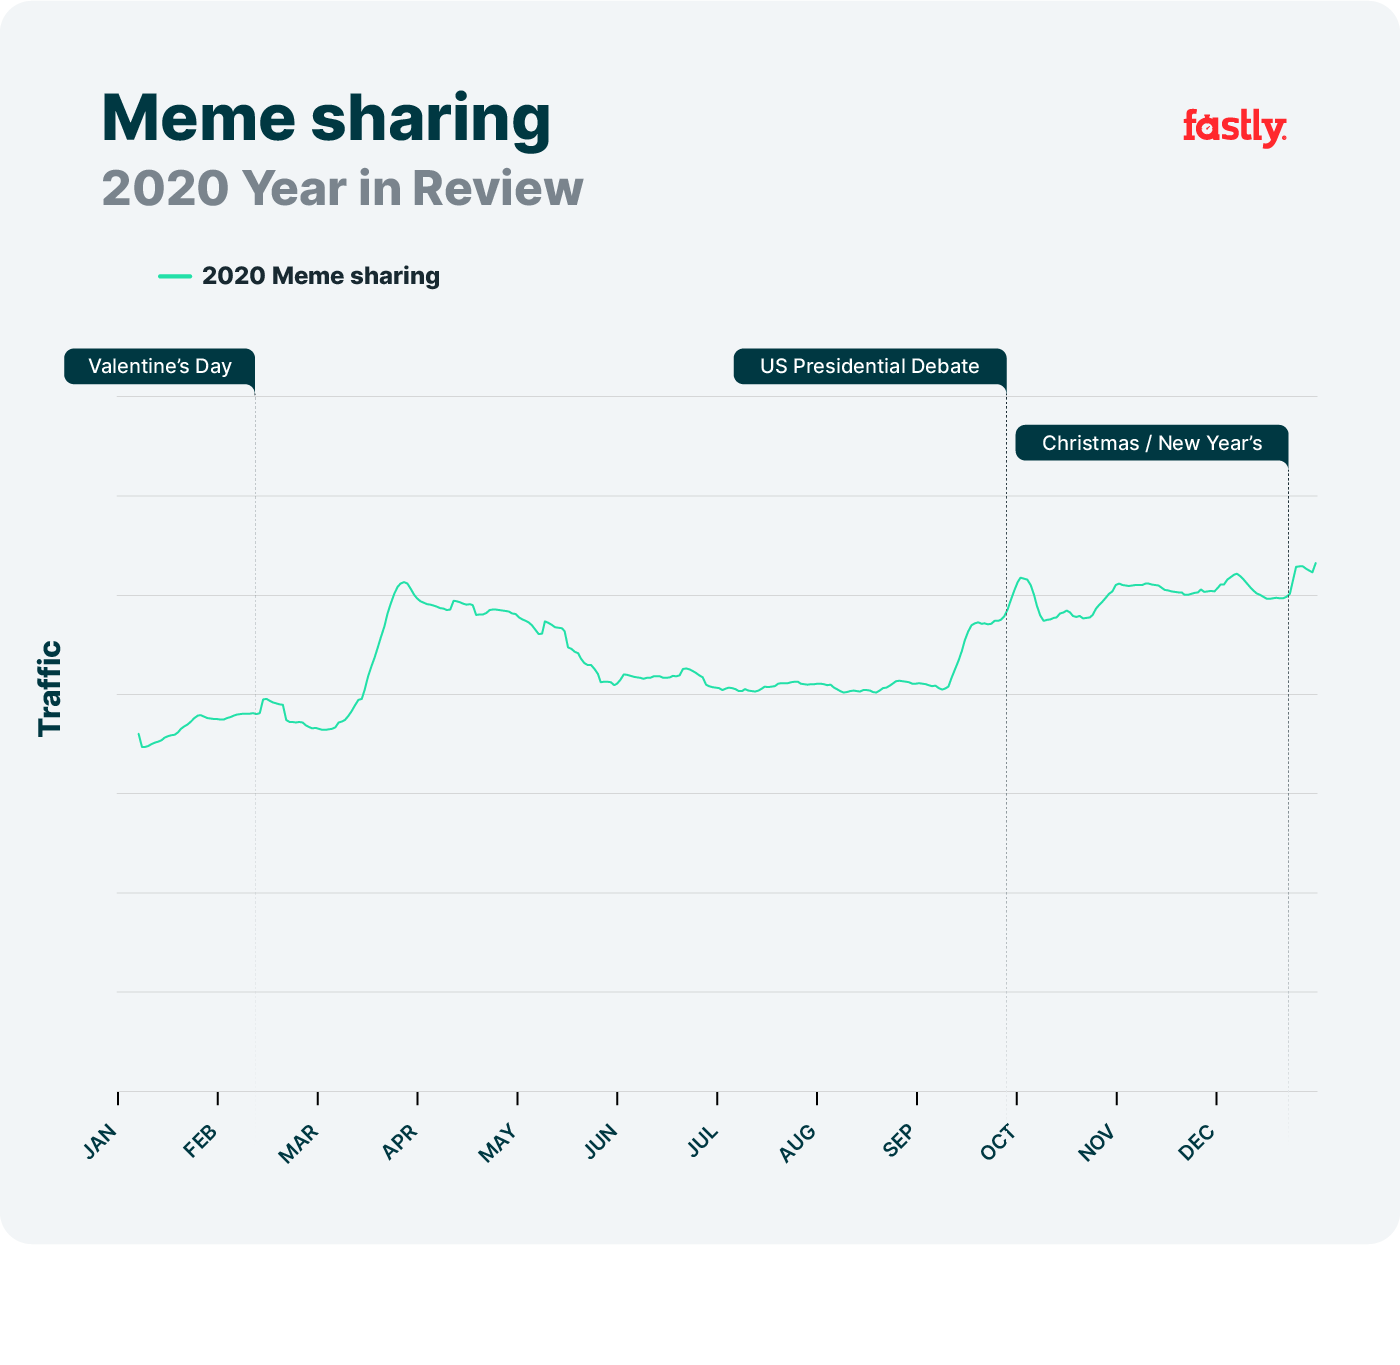 Meme sharing network trends, 2020